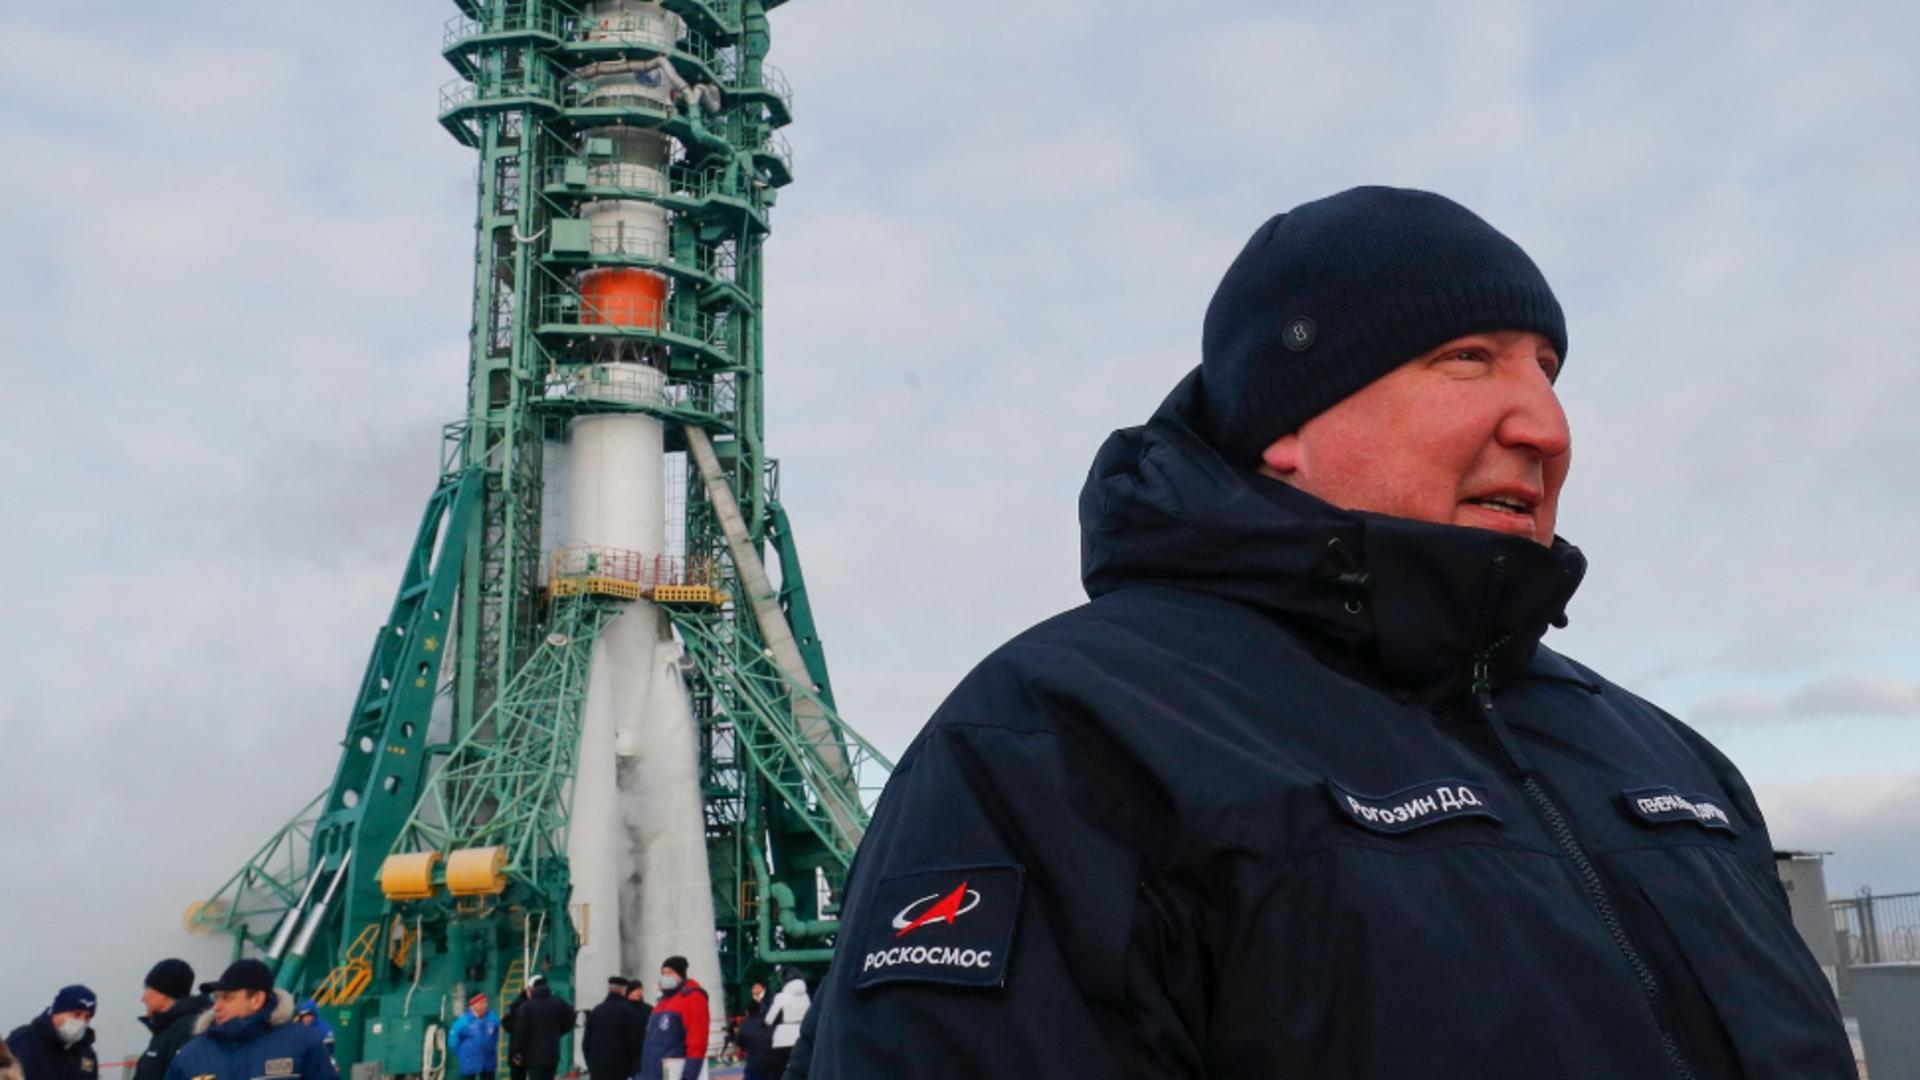 Șeful agenției spațiale a Rusiei, mesaj halucinant: "Dacă SUA nu colaborează, Stația Spațială Internațională poate cădea peste ei"